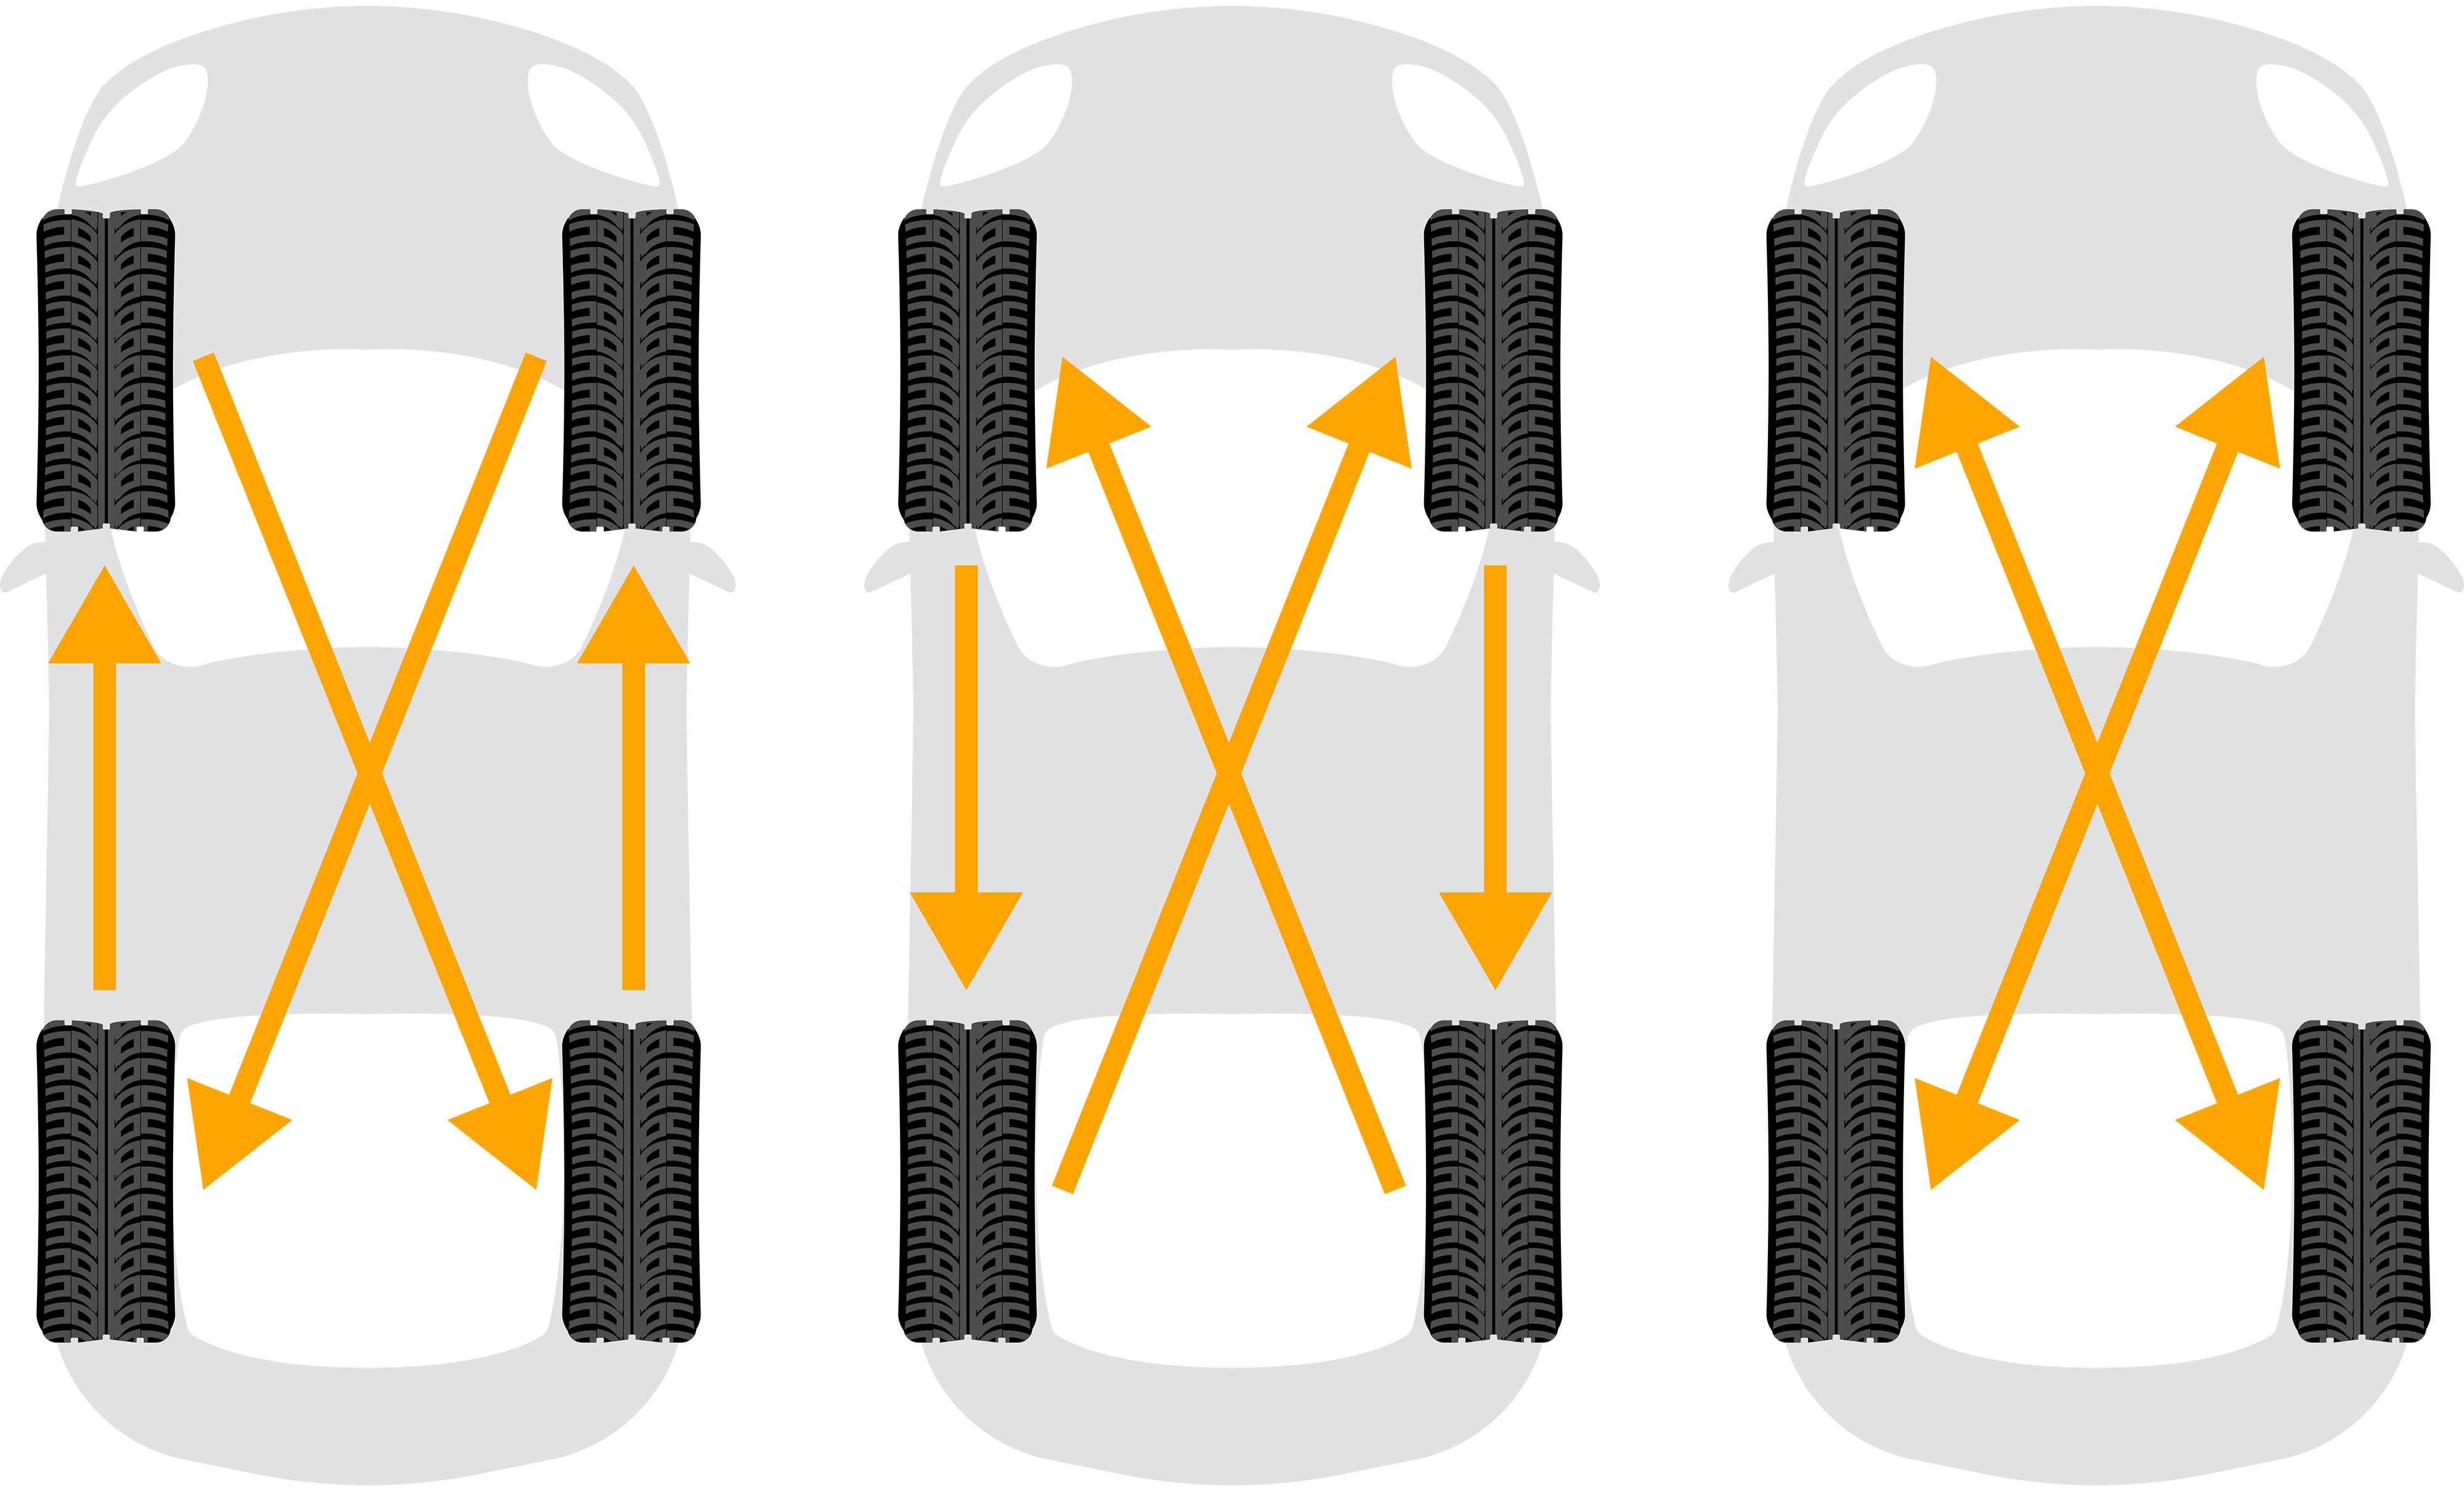 Trzy samochody, każdy z czterema oponami i strzałkami wyjaśniają zależności między oponami na przedniej i tylnej osi.